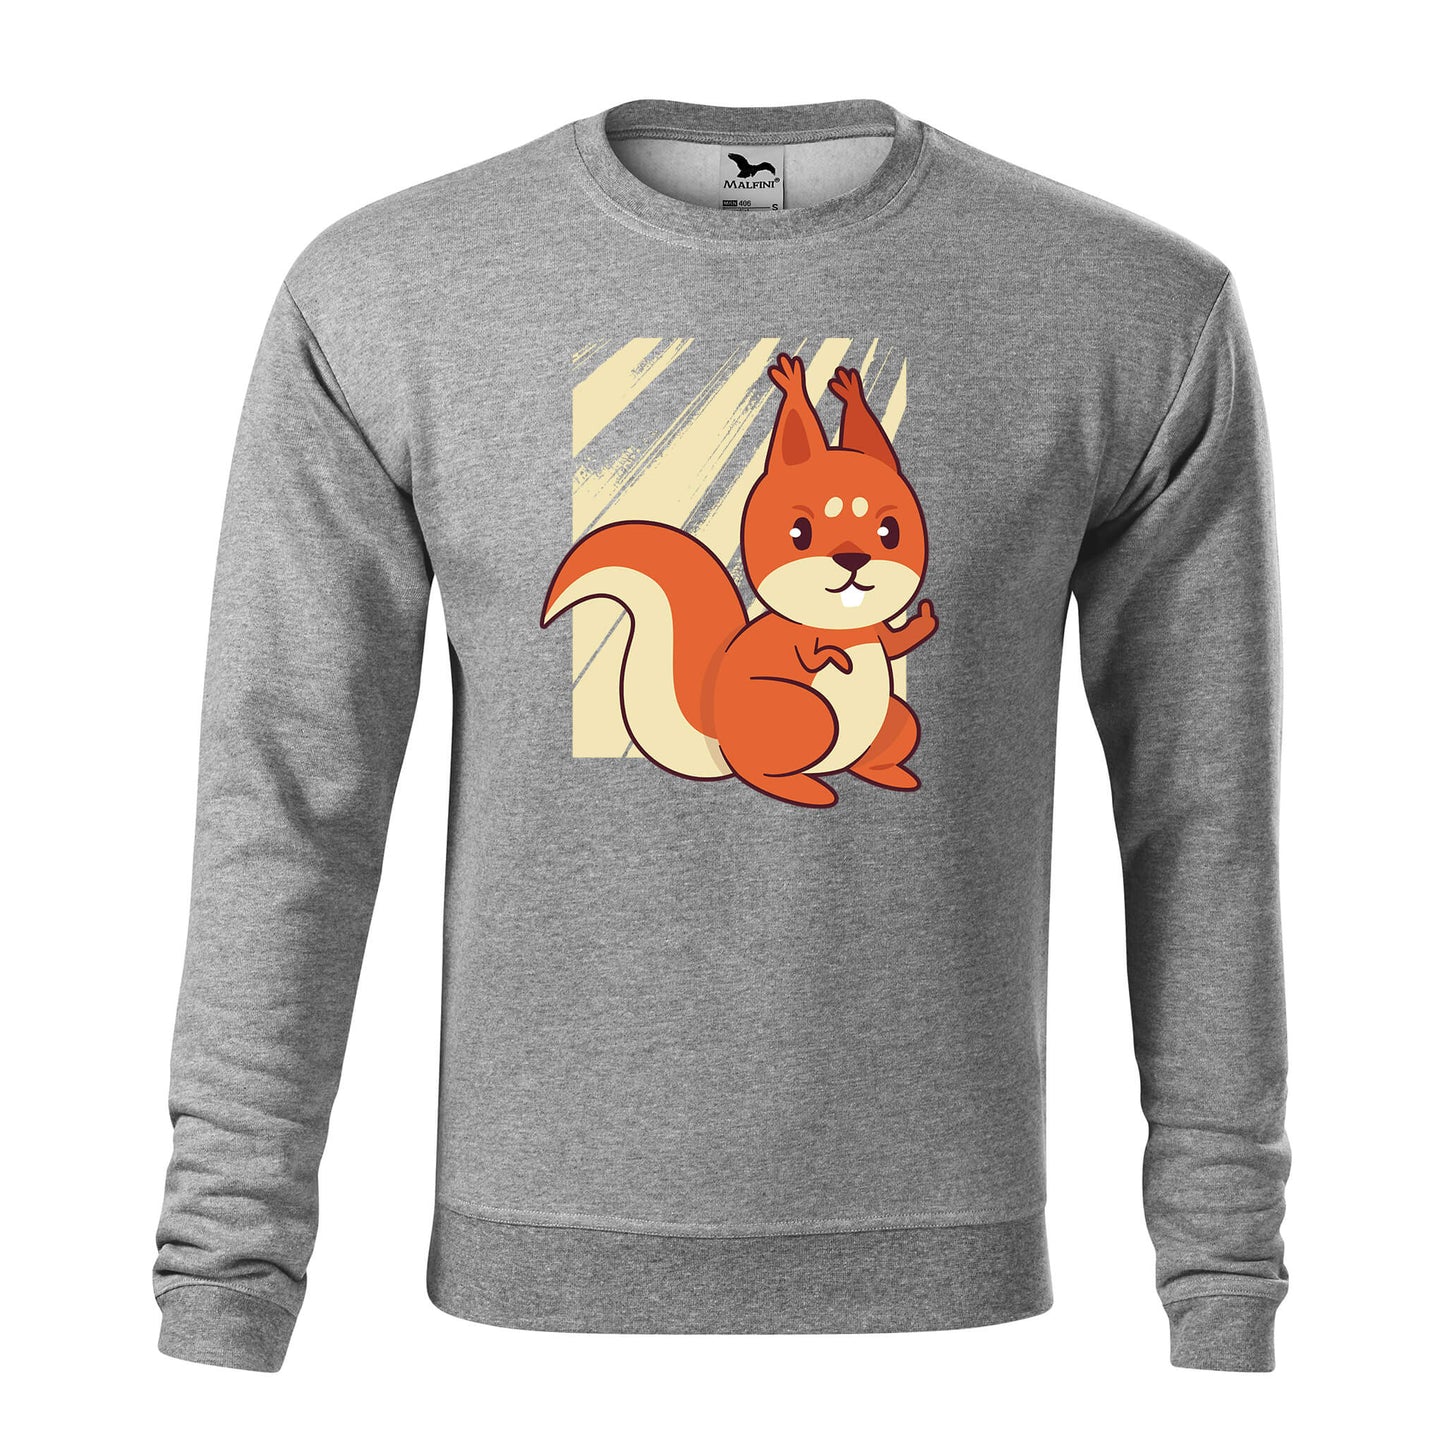 Sweat-shirt écureuil grossier - homme